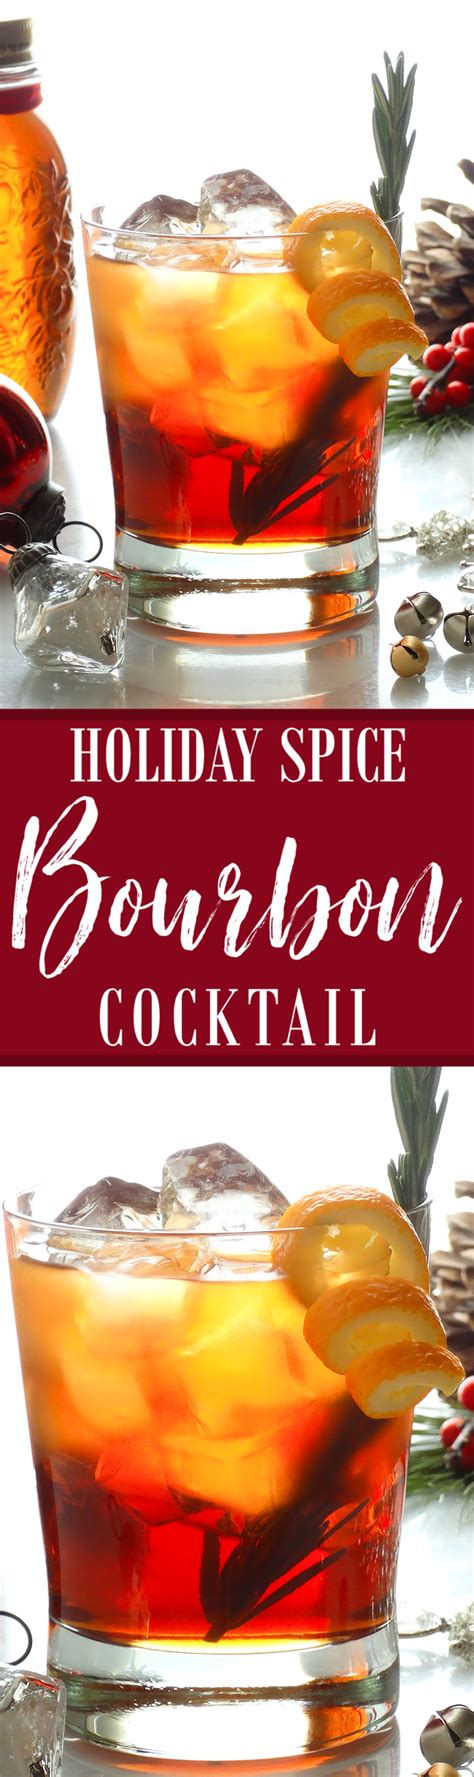 27 christmas cocktails to drink this holiday season. Bourbon Christmas Cocktails - Naughty but Nice Christmas ...